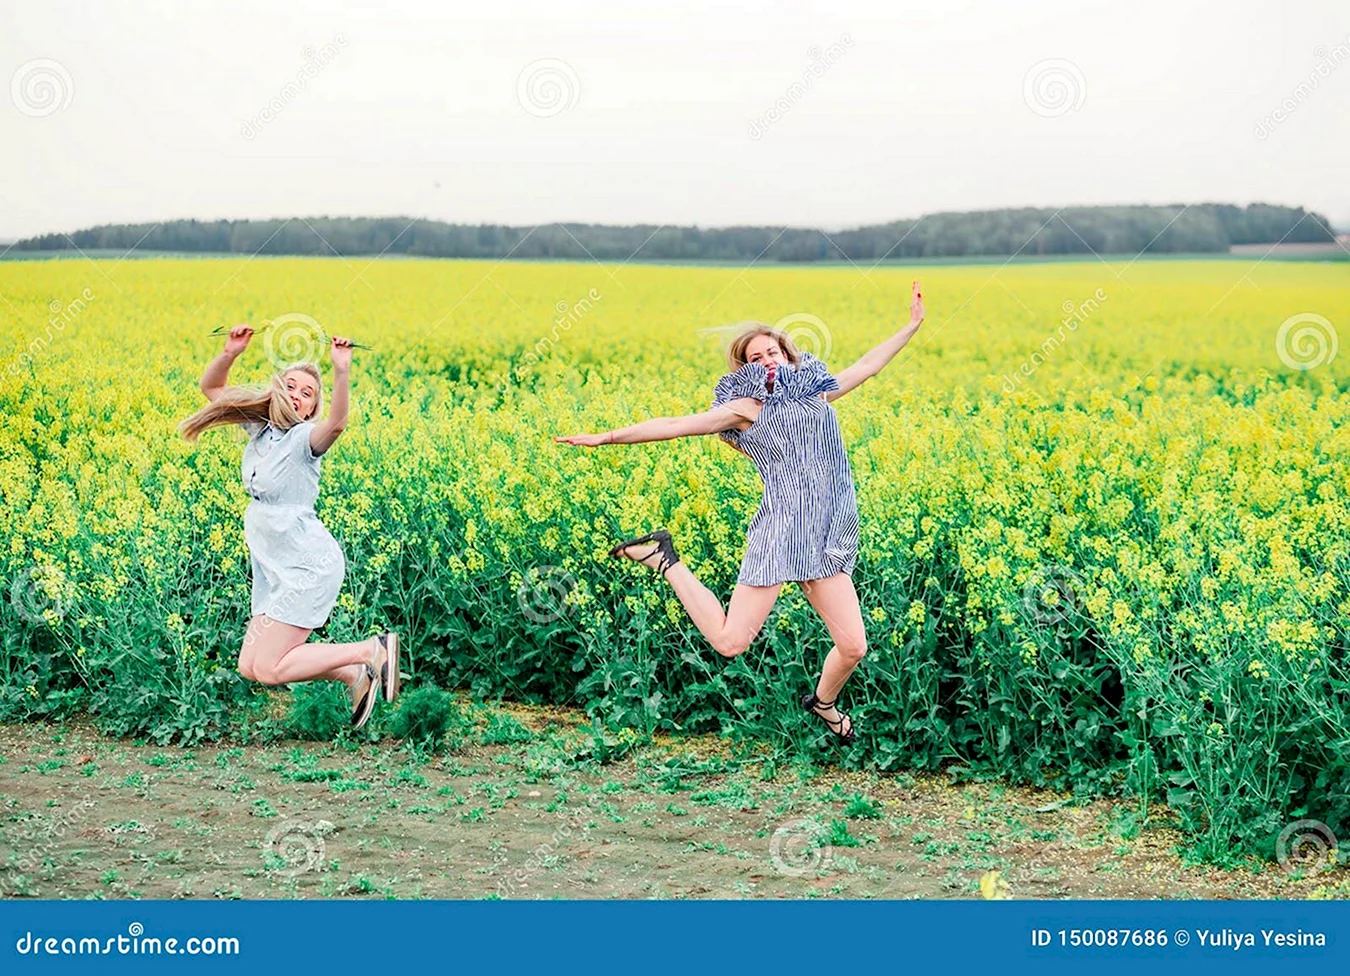 Девушка прыгает в поле